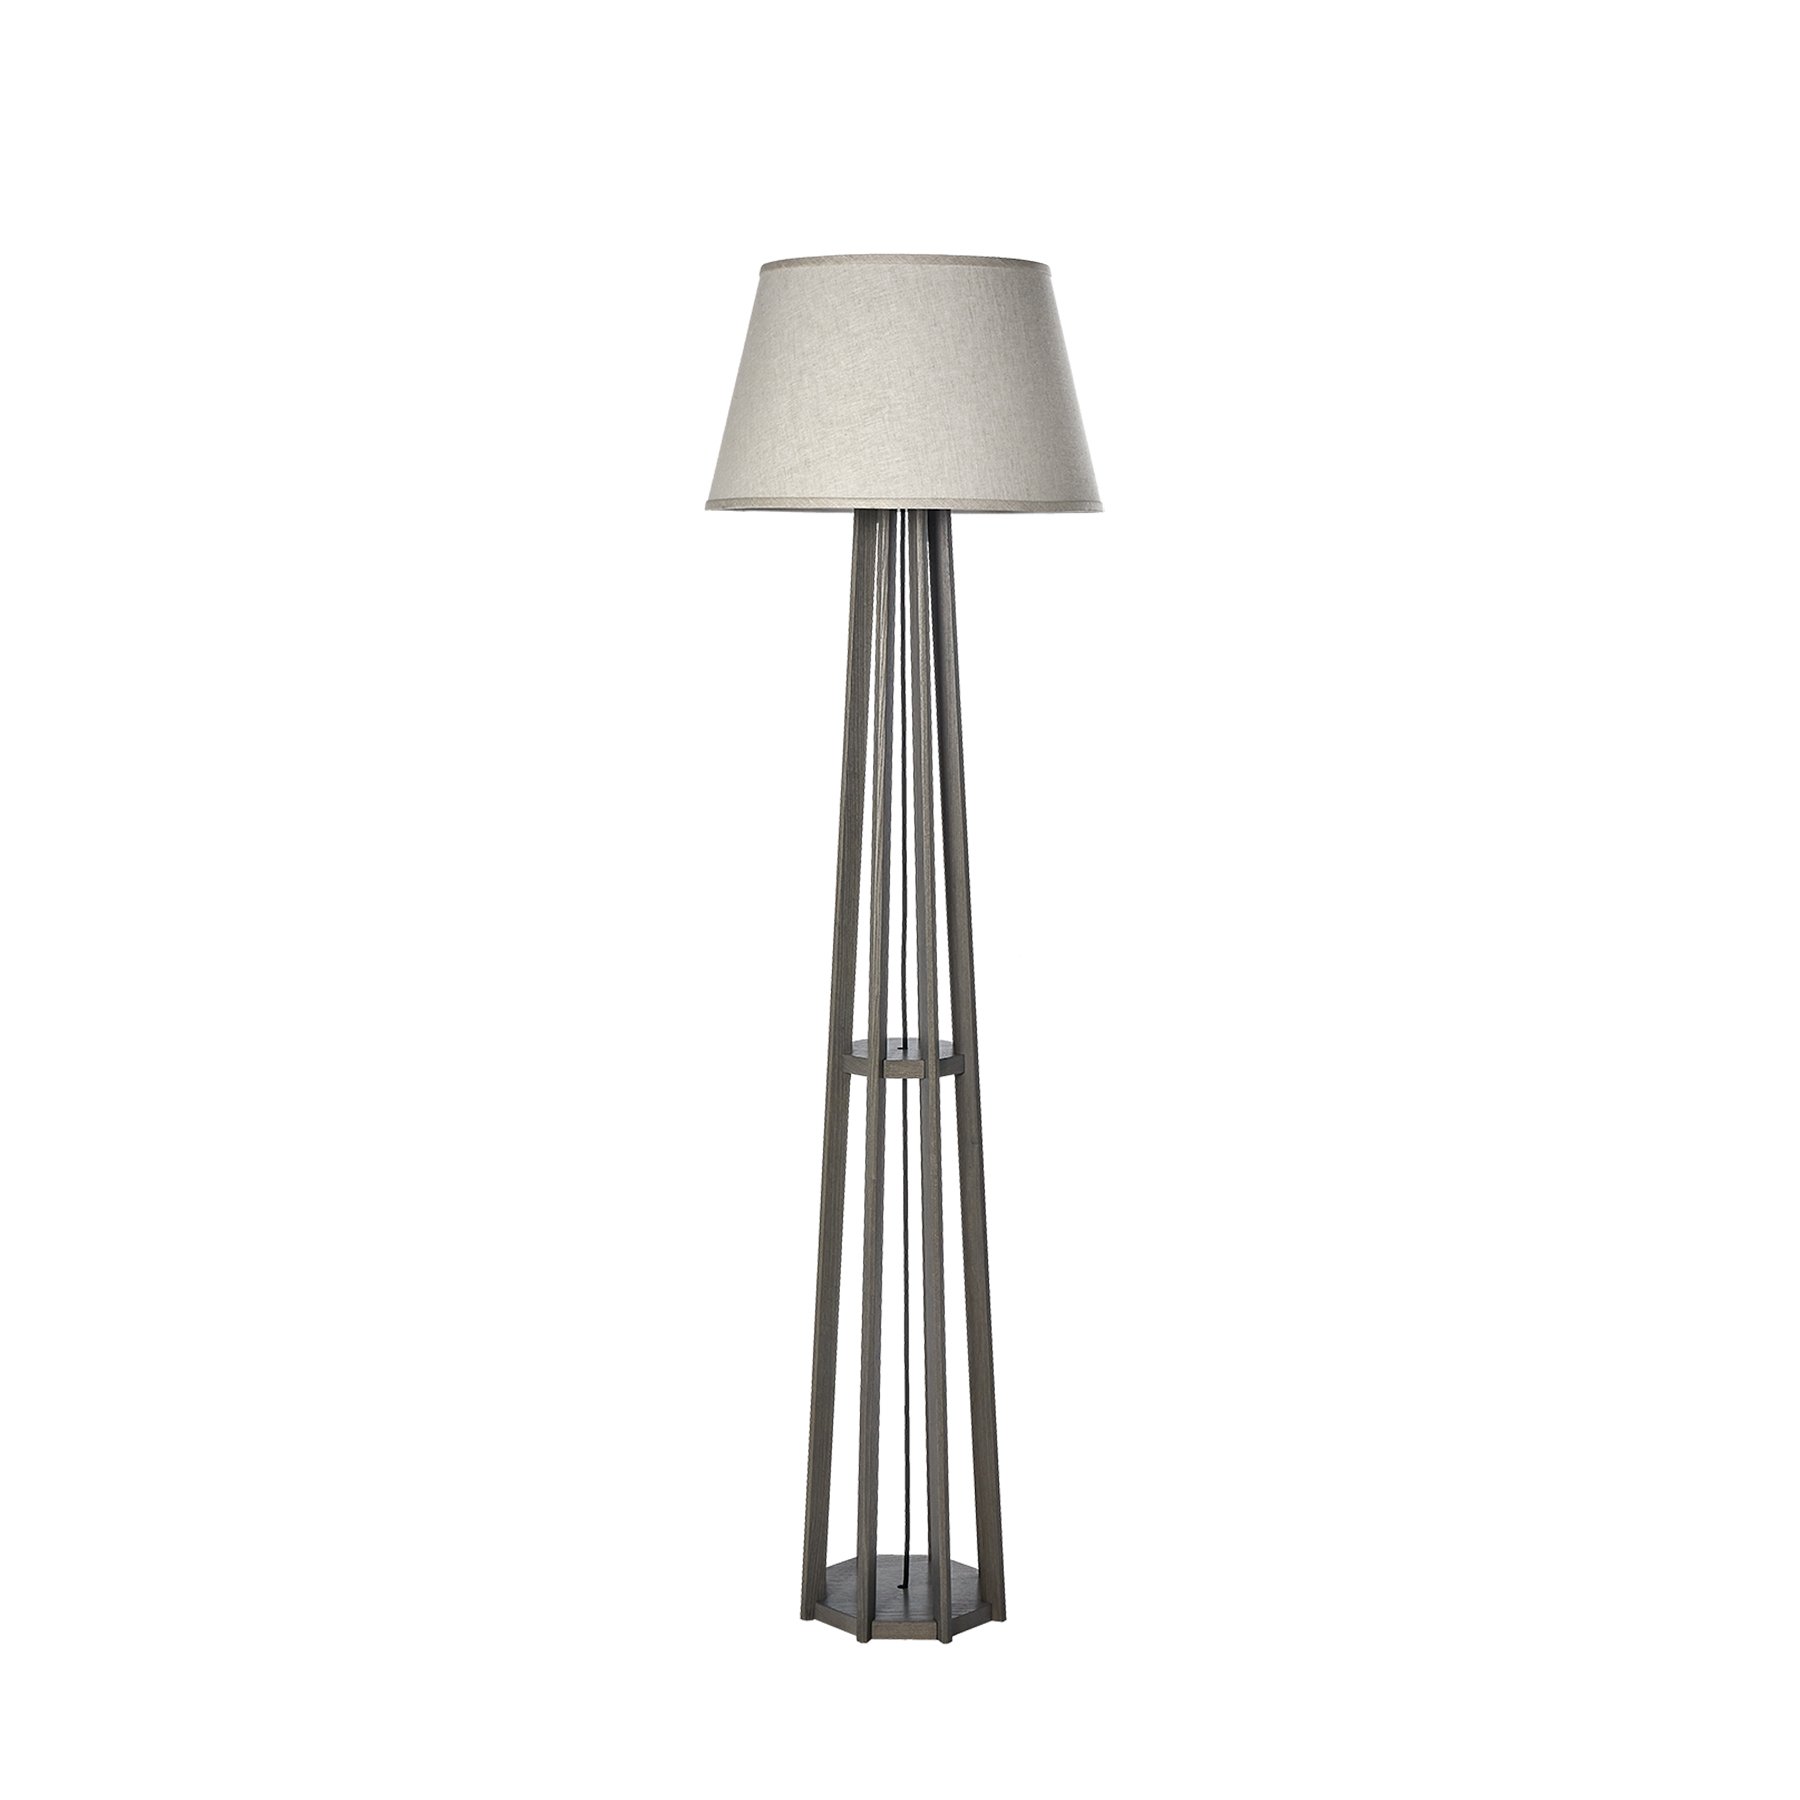 TORRE FLOOR LAMP -  $2,993